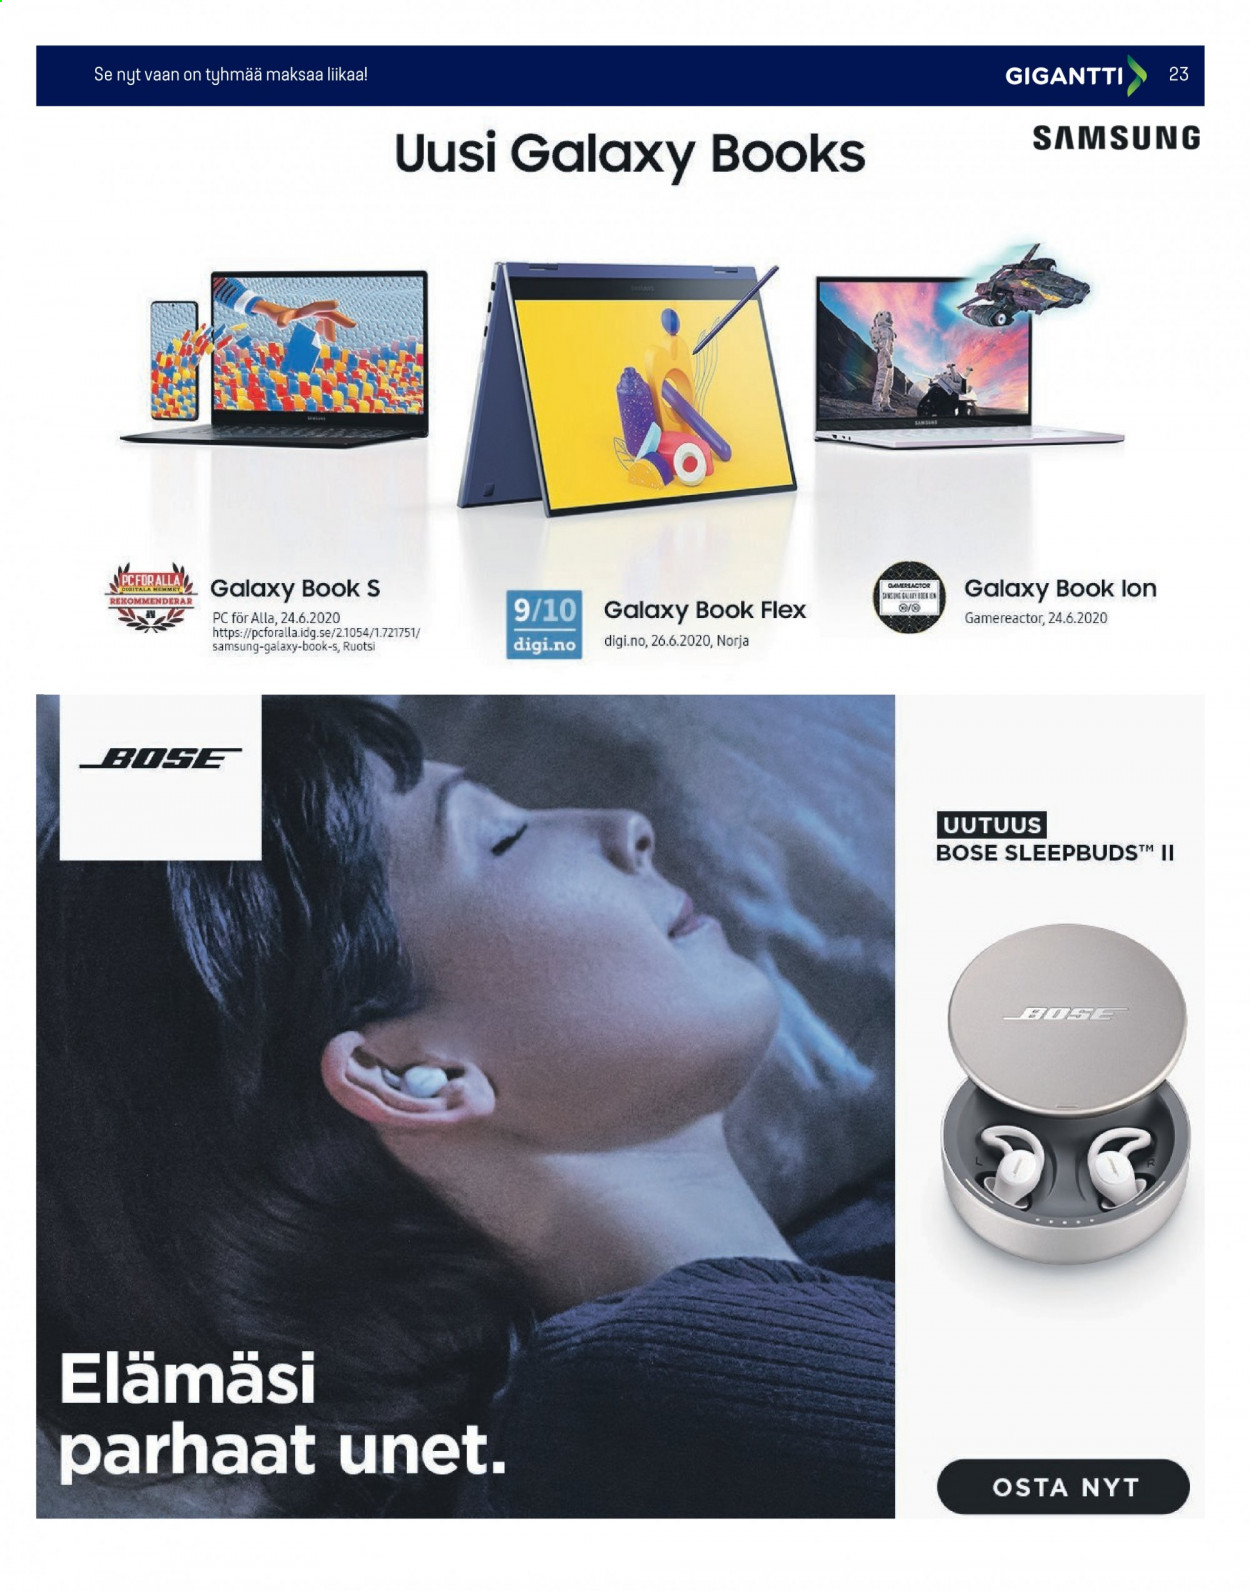 thumbnail - Gigantti tarjoukset  - 08.02.2021 - 14.02.2021 - Tarjoustuotteet - Samsung, Bose. Sivu 23.